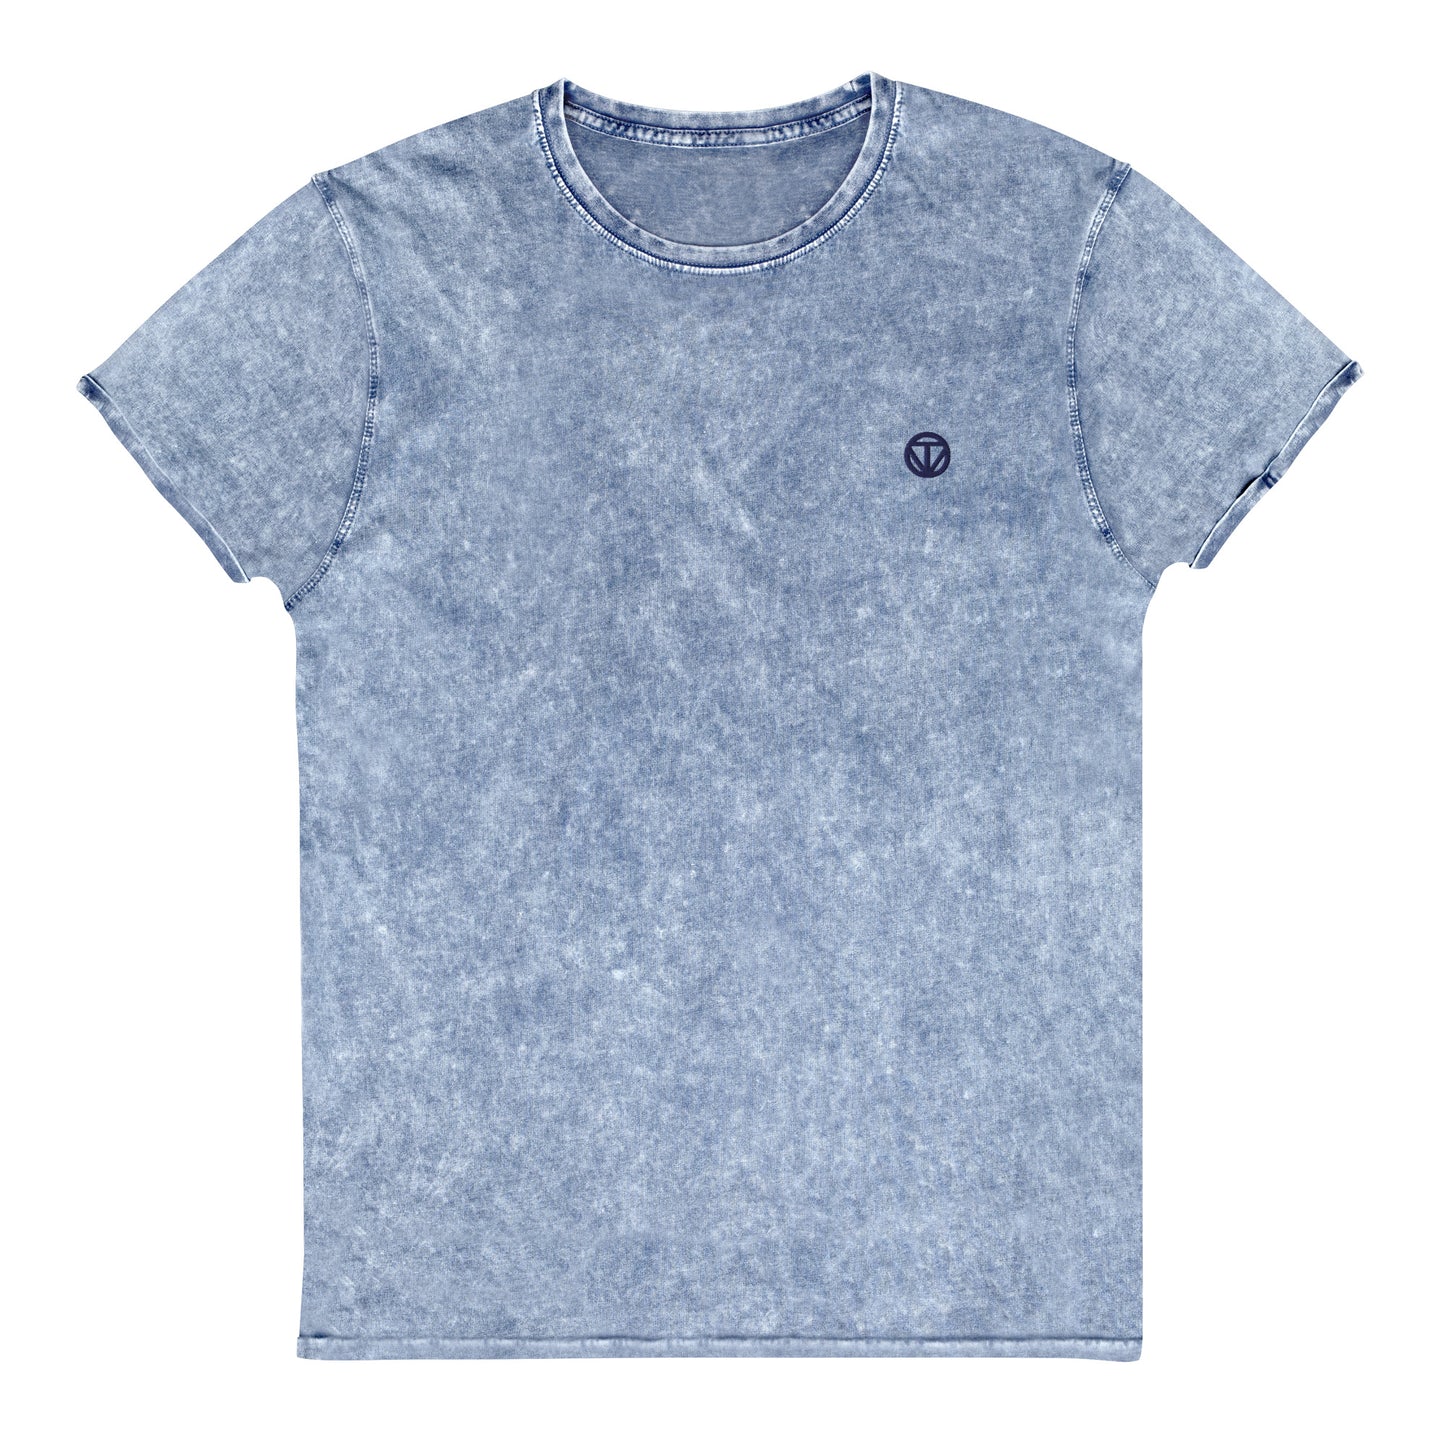 Damen Baumwoll T-Shirt meliert 23 (Blau)